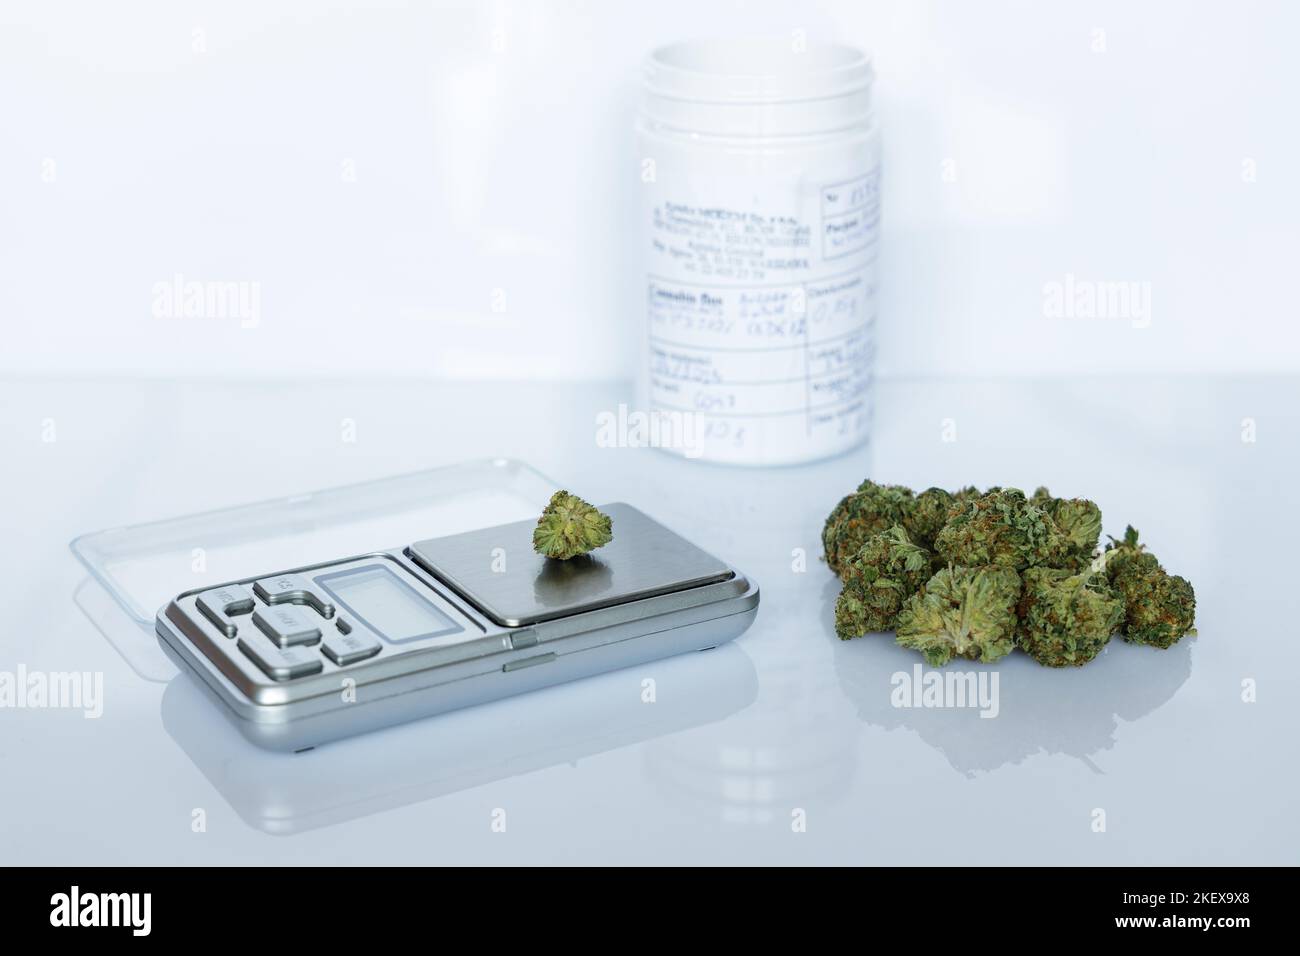 FLOS di cannabis, mucchio di marijuana medica accanto alla scala di precisione e contenitore bianco, modo sicuro per prendere la medicina Foto Stock